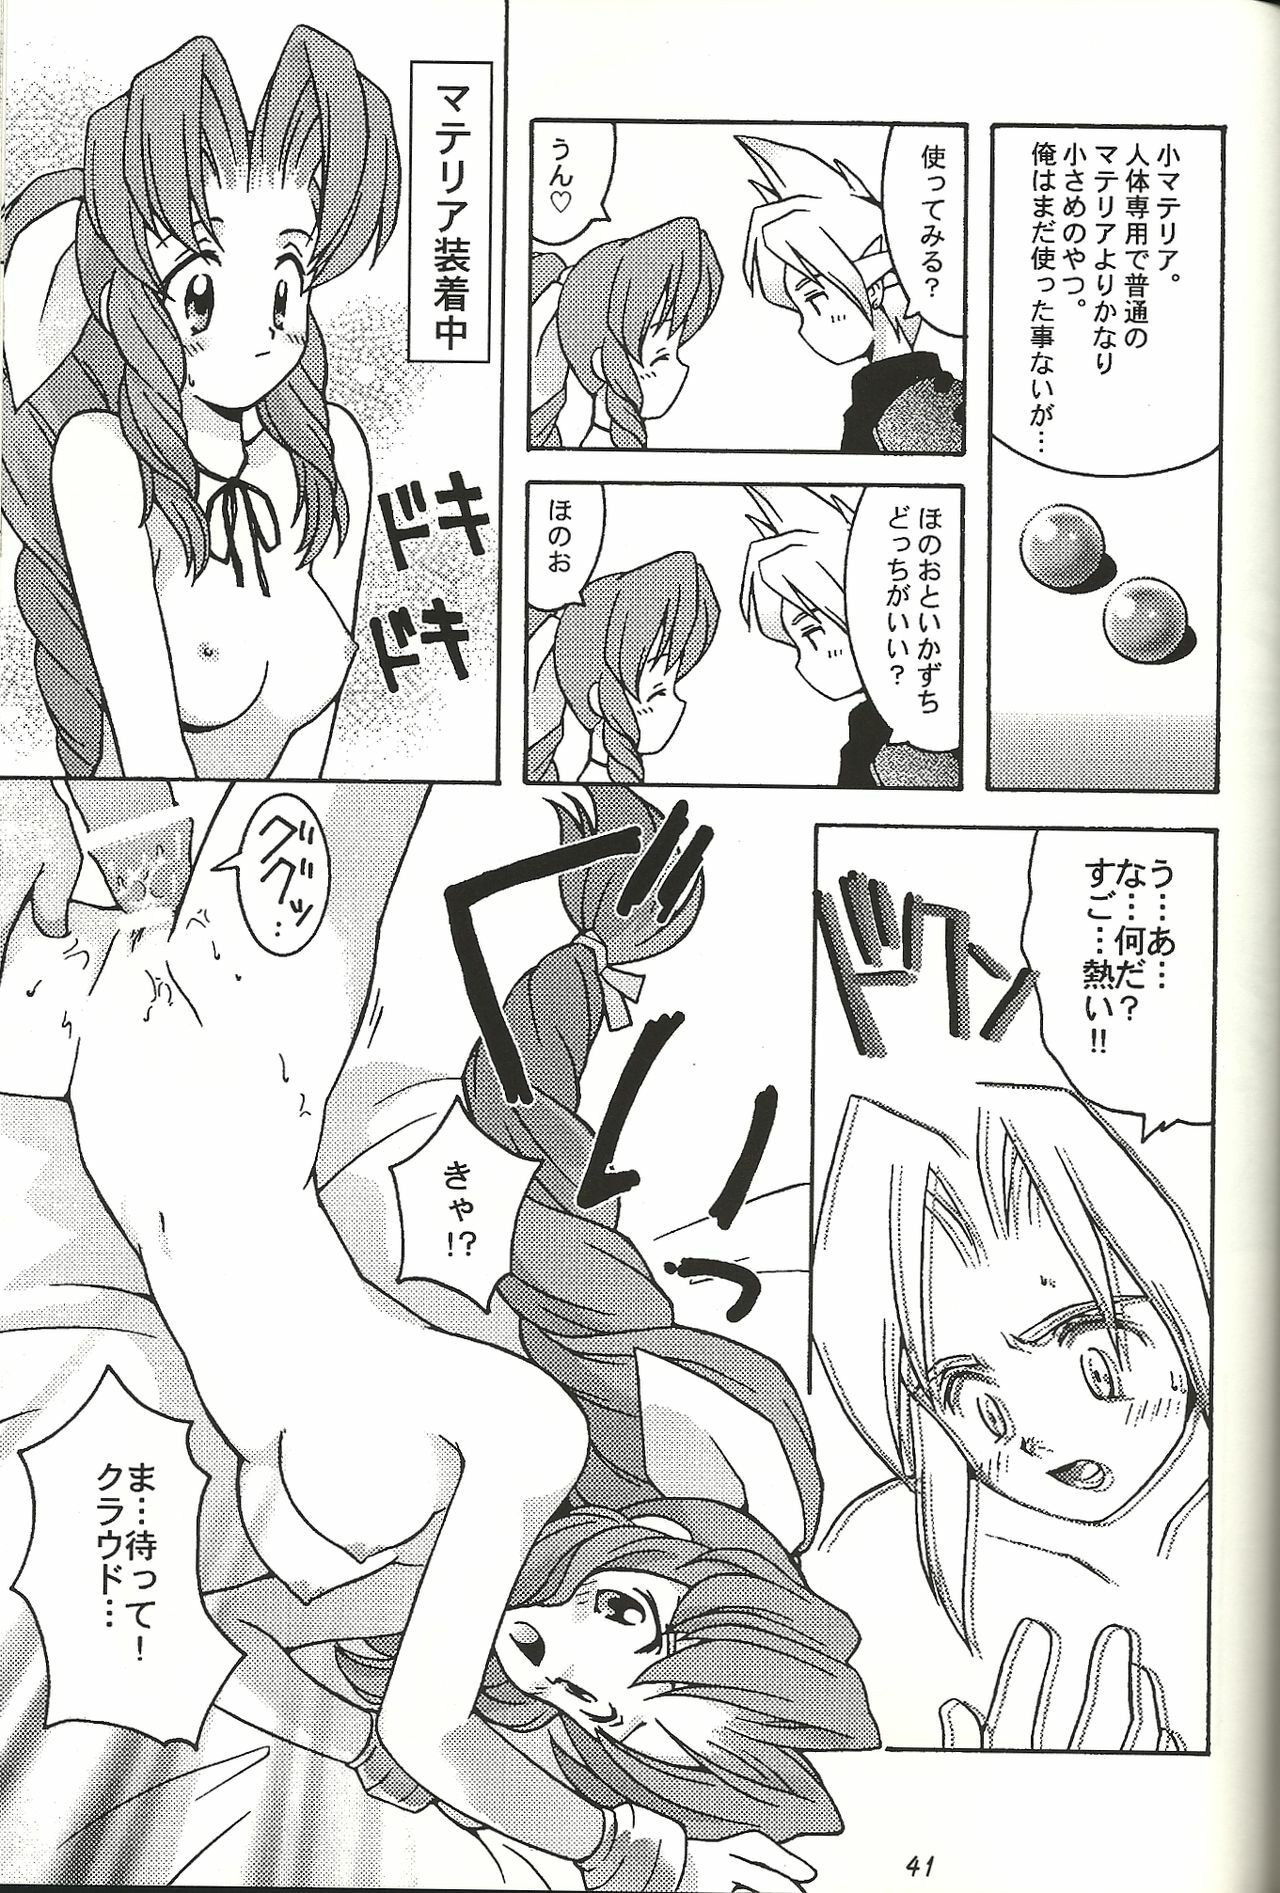 (CR21) [Bakuhatsu BRS. (B.Tarou)] Renai Shiyou (Final Fantasy VII) page 41 full